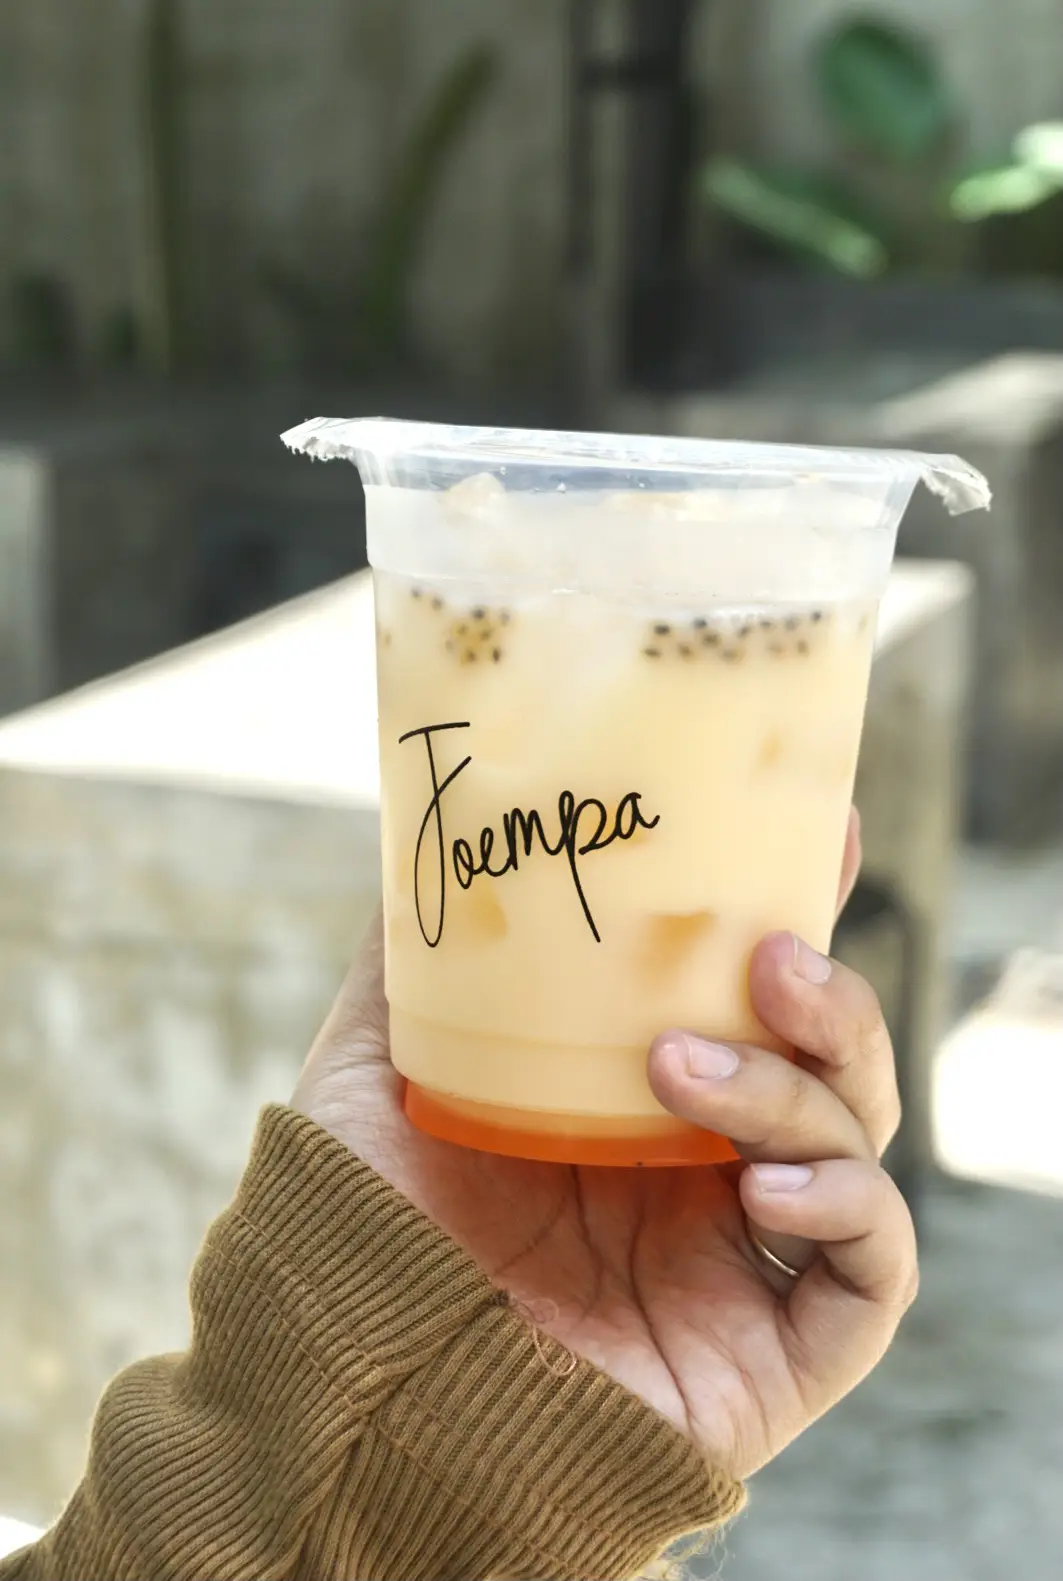 Joempa Coffee